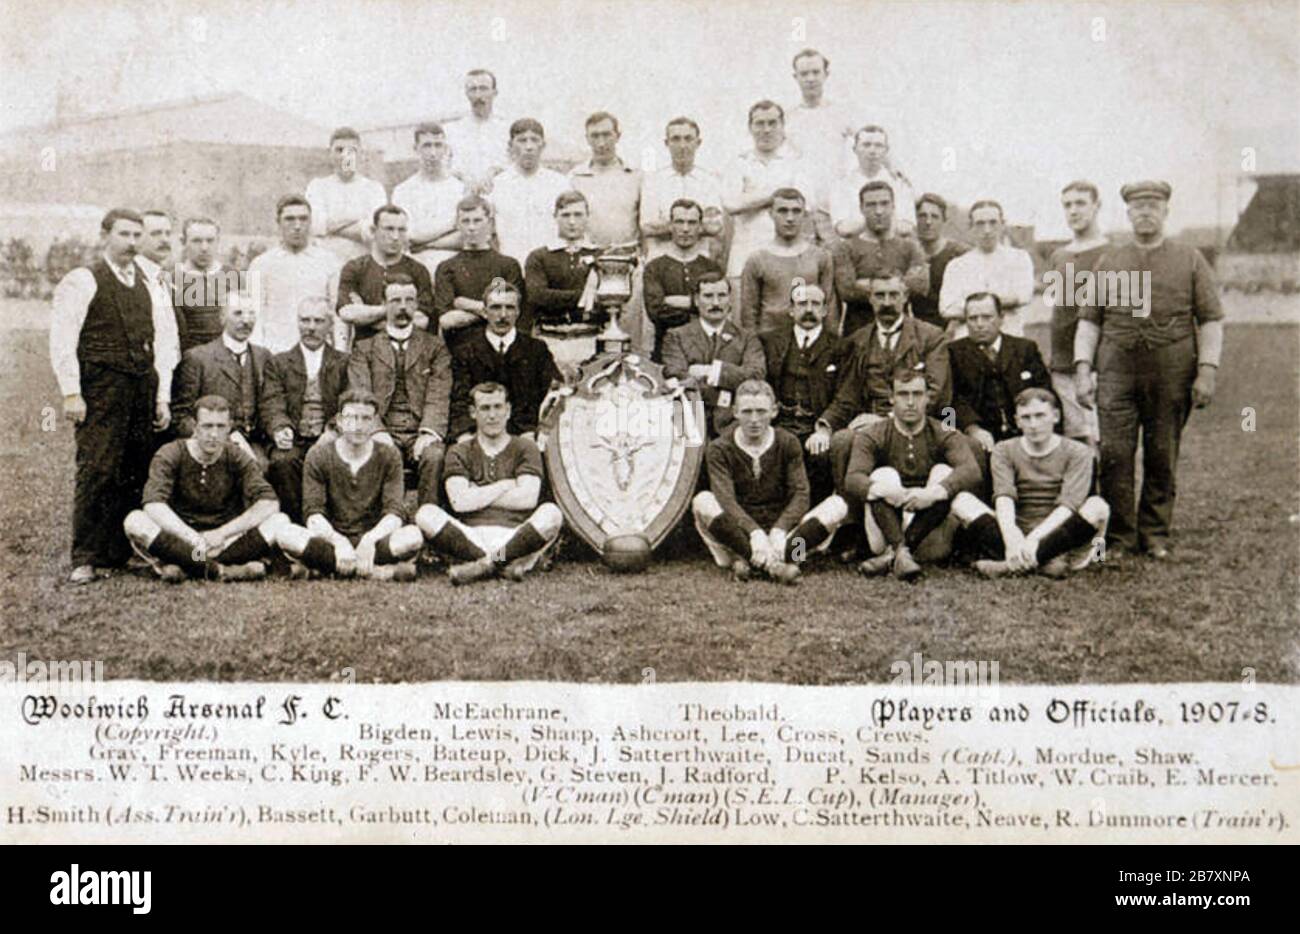 WOOLWICH ARSENAL EQUIPO DE FÚTBOL 1908 posando con un escudo, probablemente el trofeo de la Asociación de futbolistas profesionales de Londres Charity Fund Match. Foto de stock